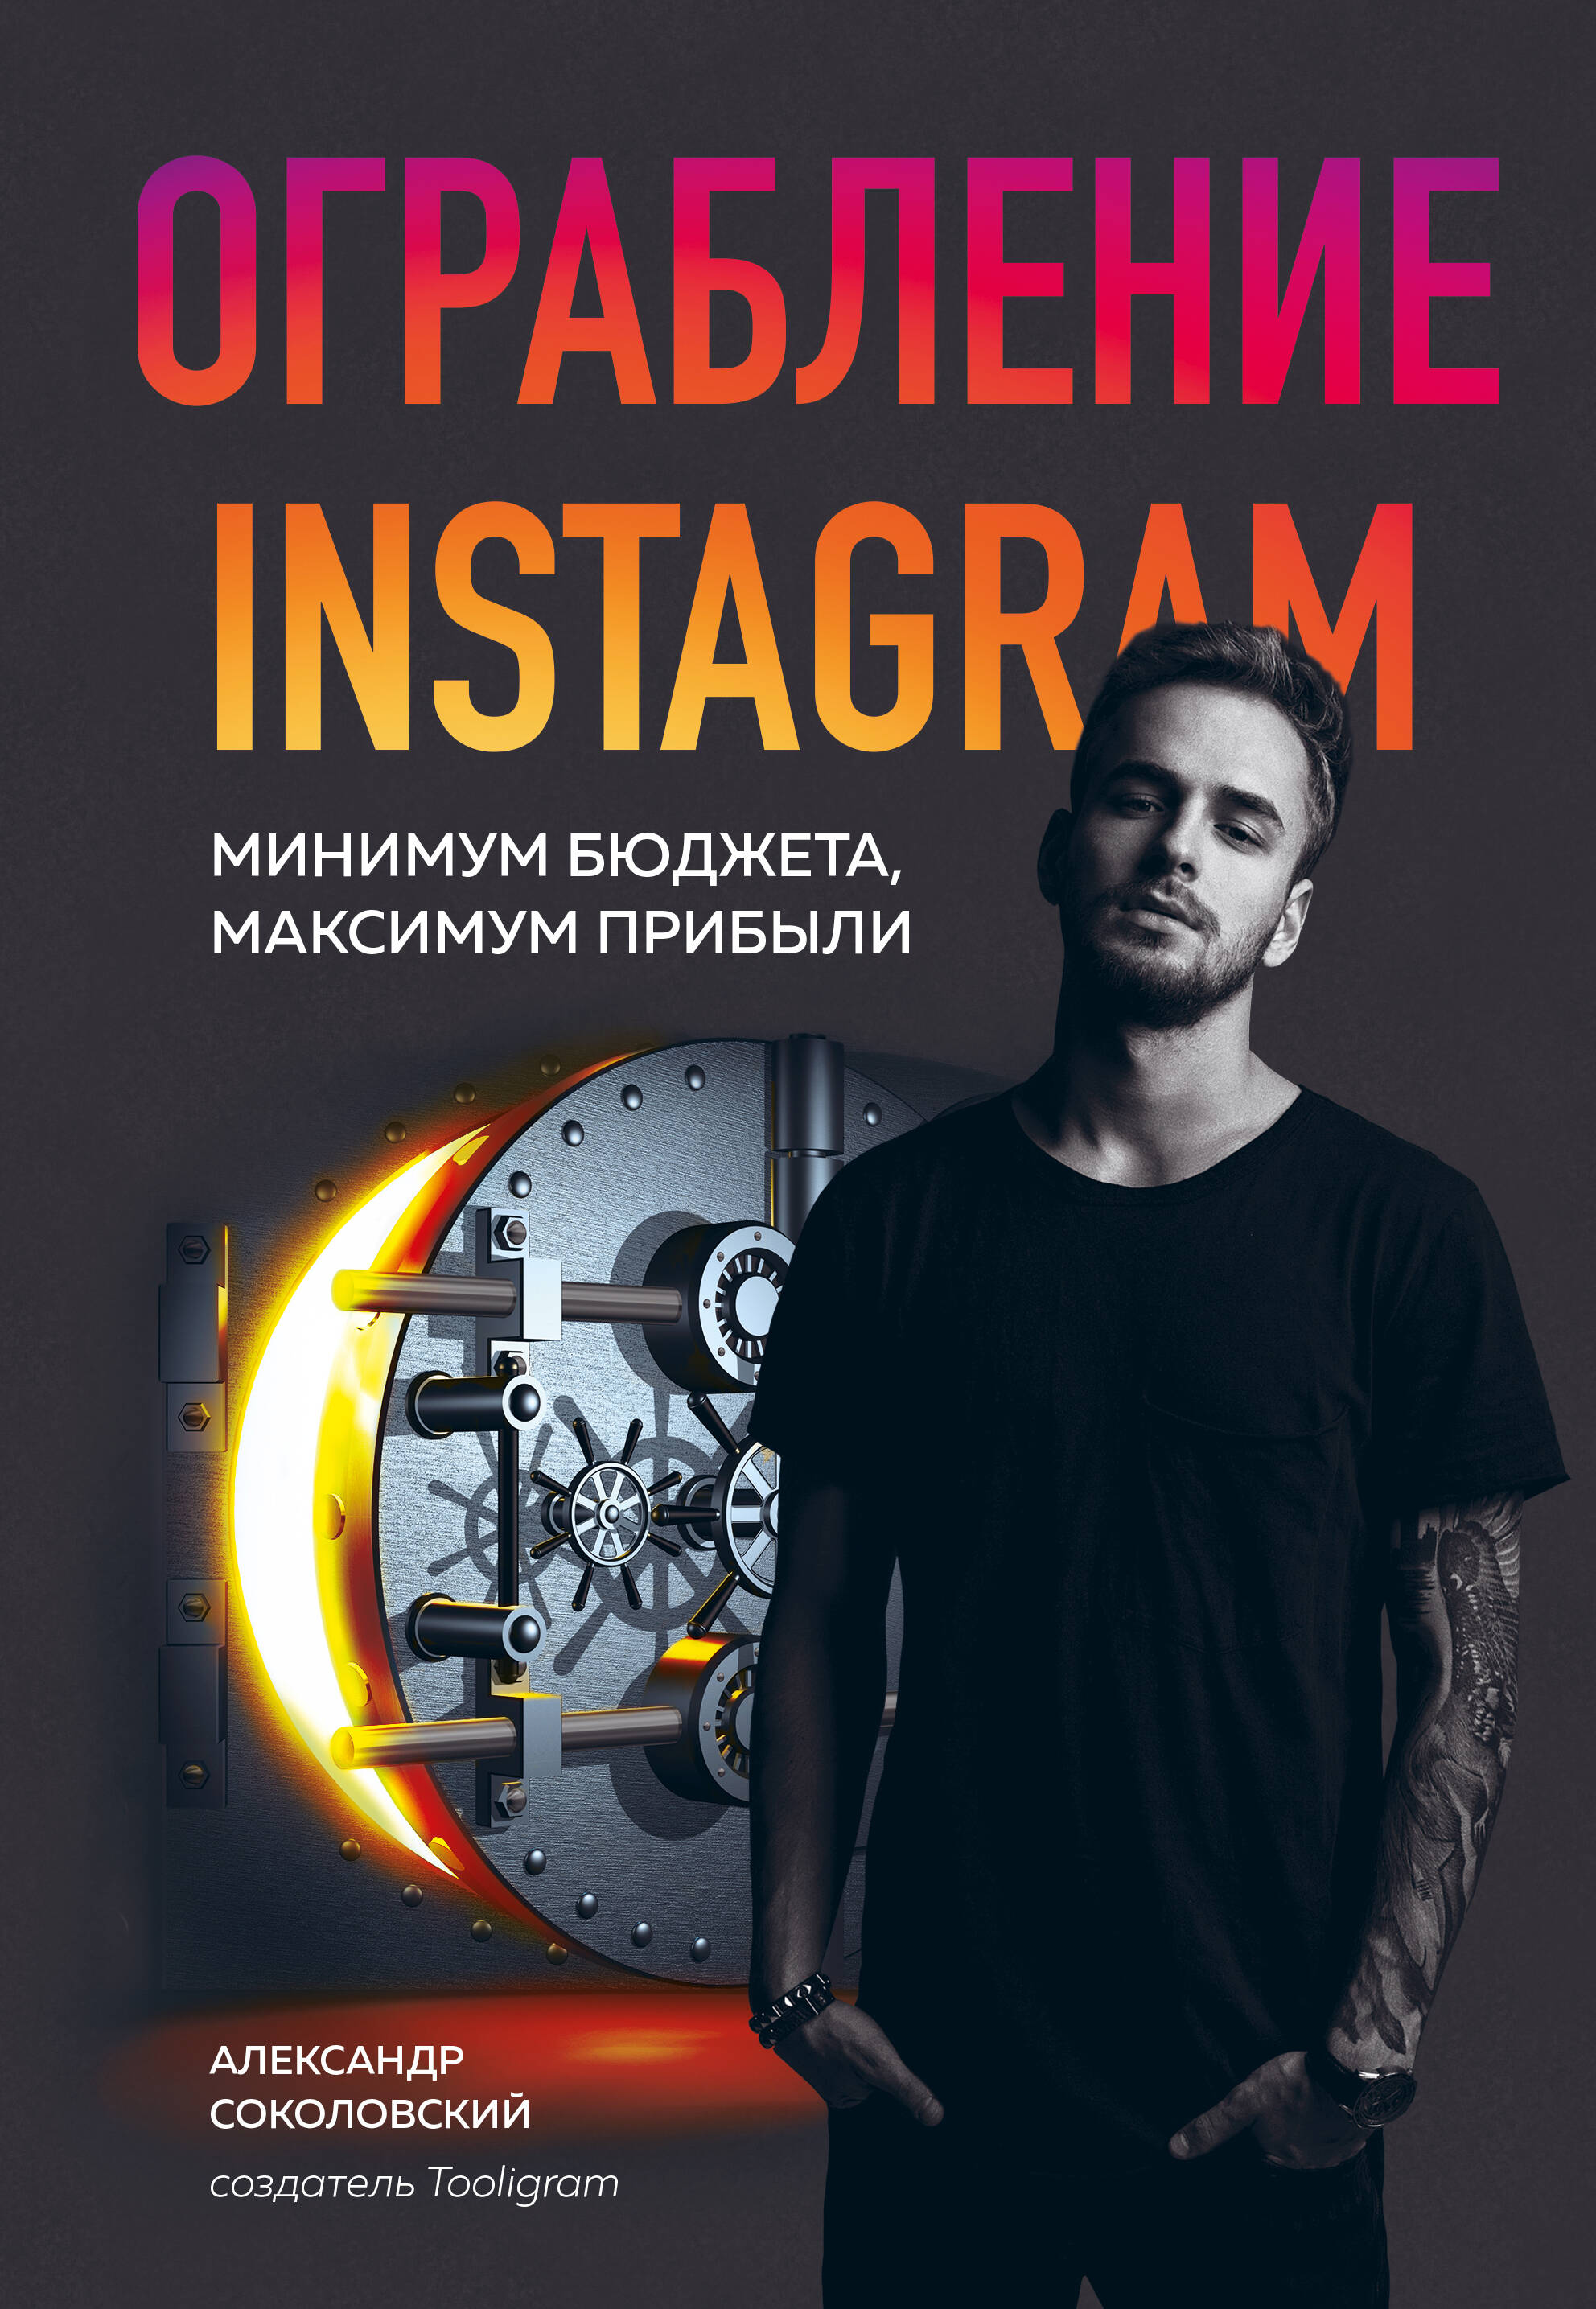 Соколовский Александр Сергеевич - Ограбление Instagram. Минимум бюджета, максимум прибыли